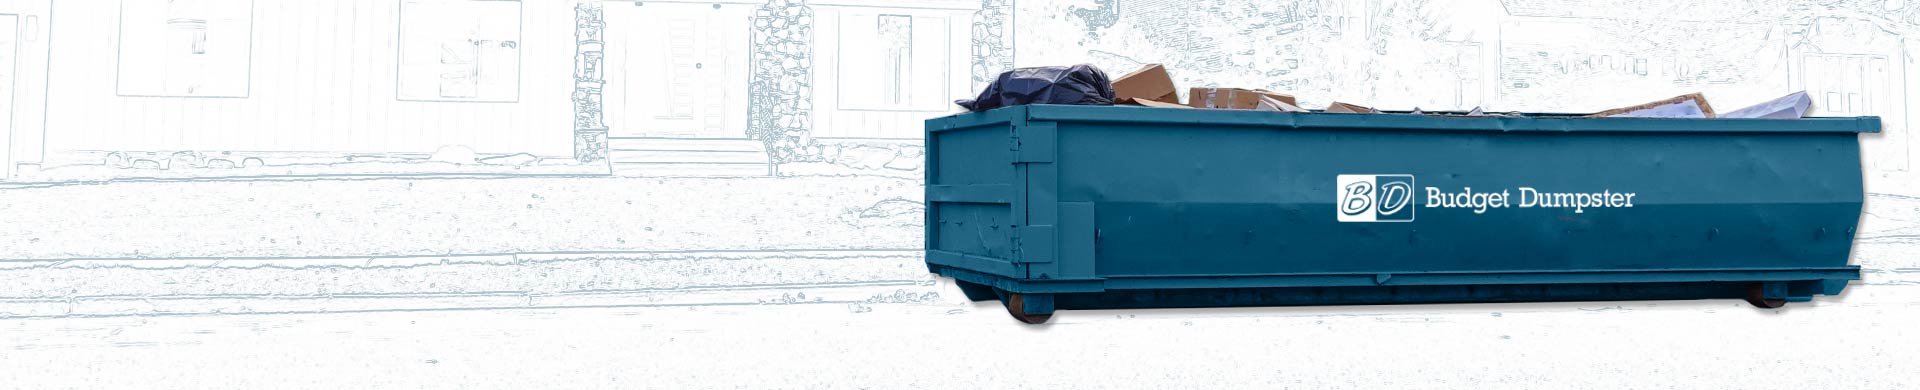 Filled Blue Dumpster With Budget Dumpster Logo